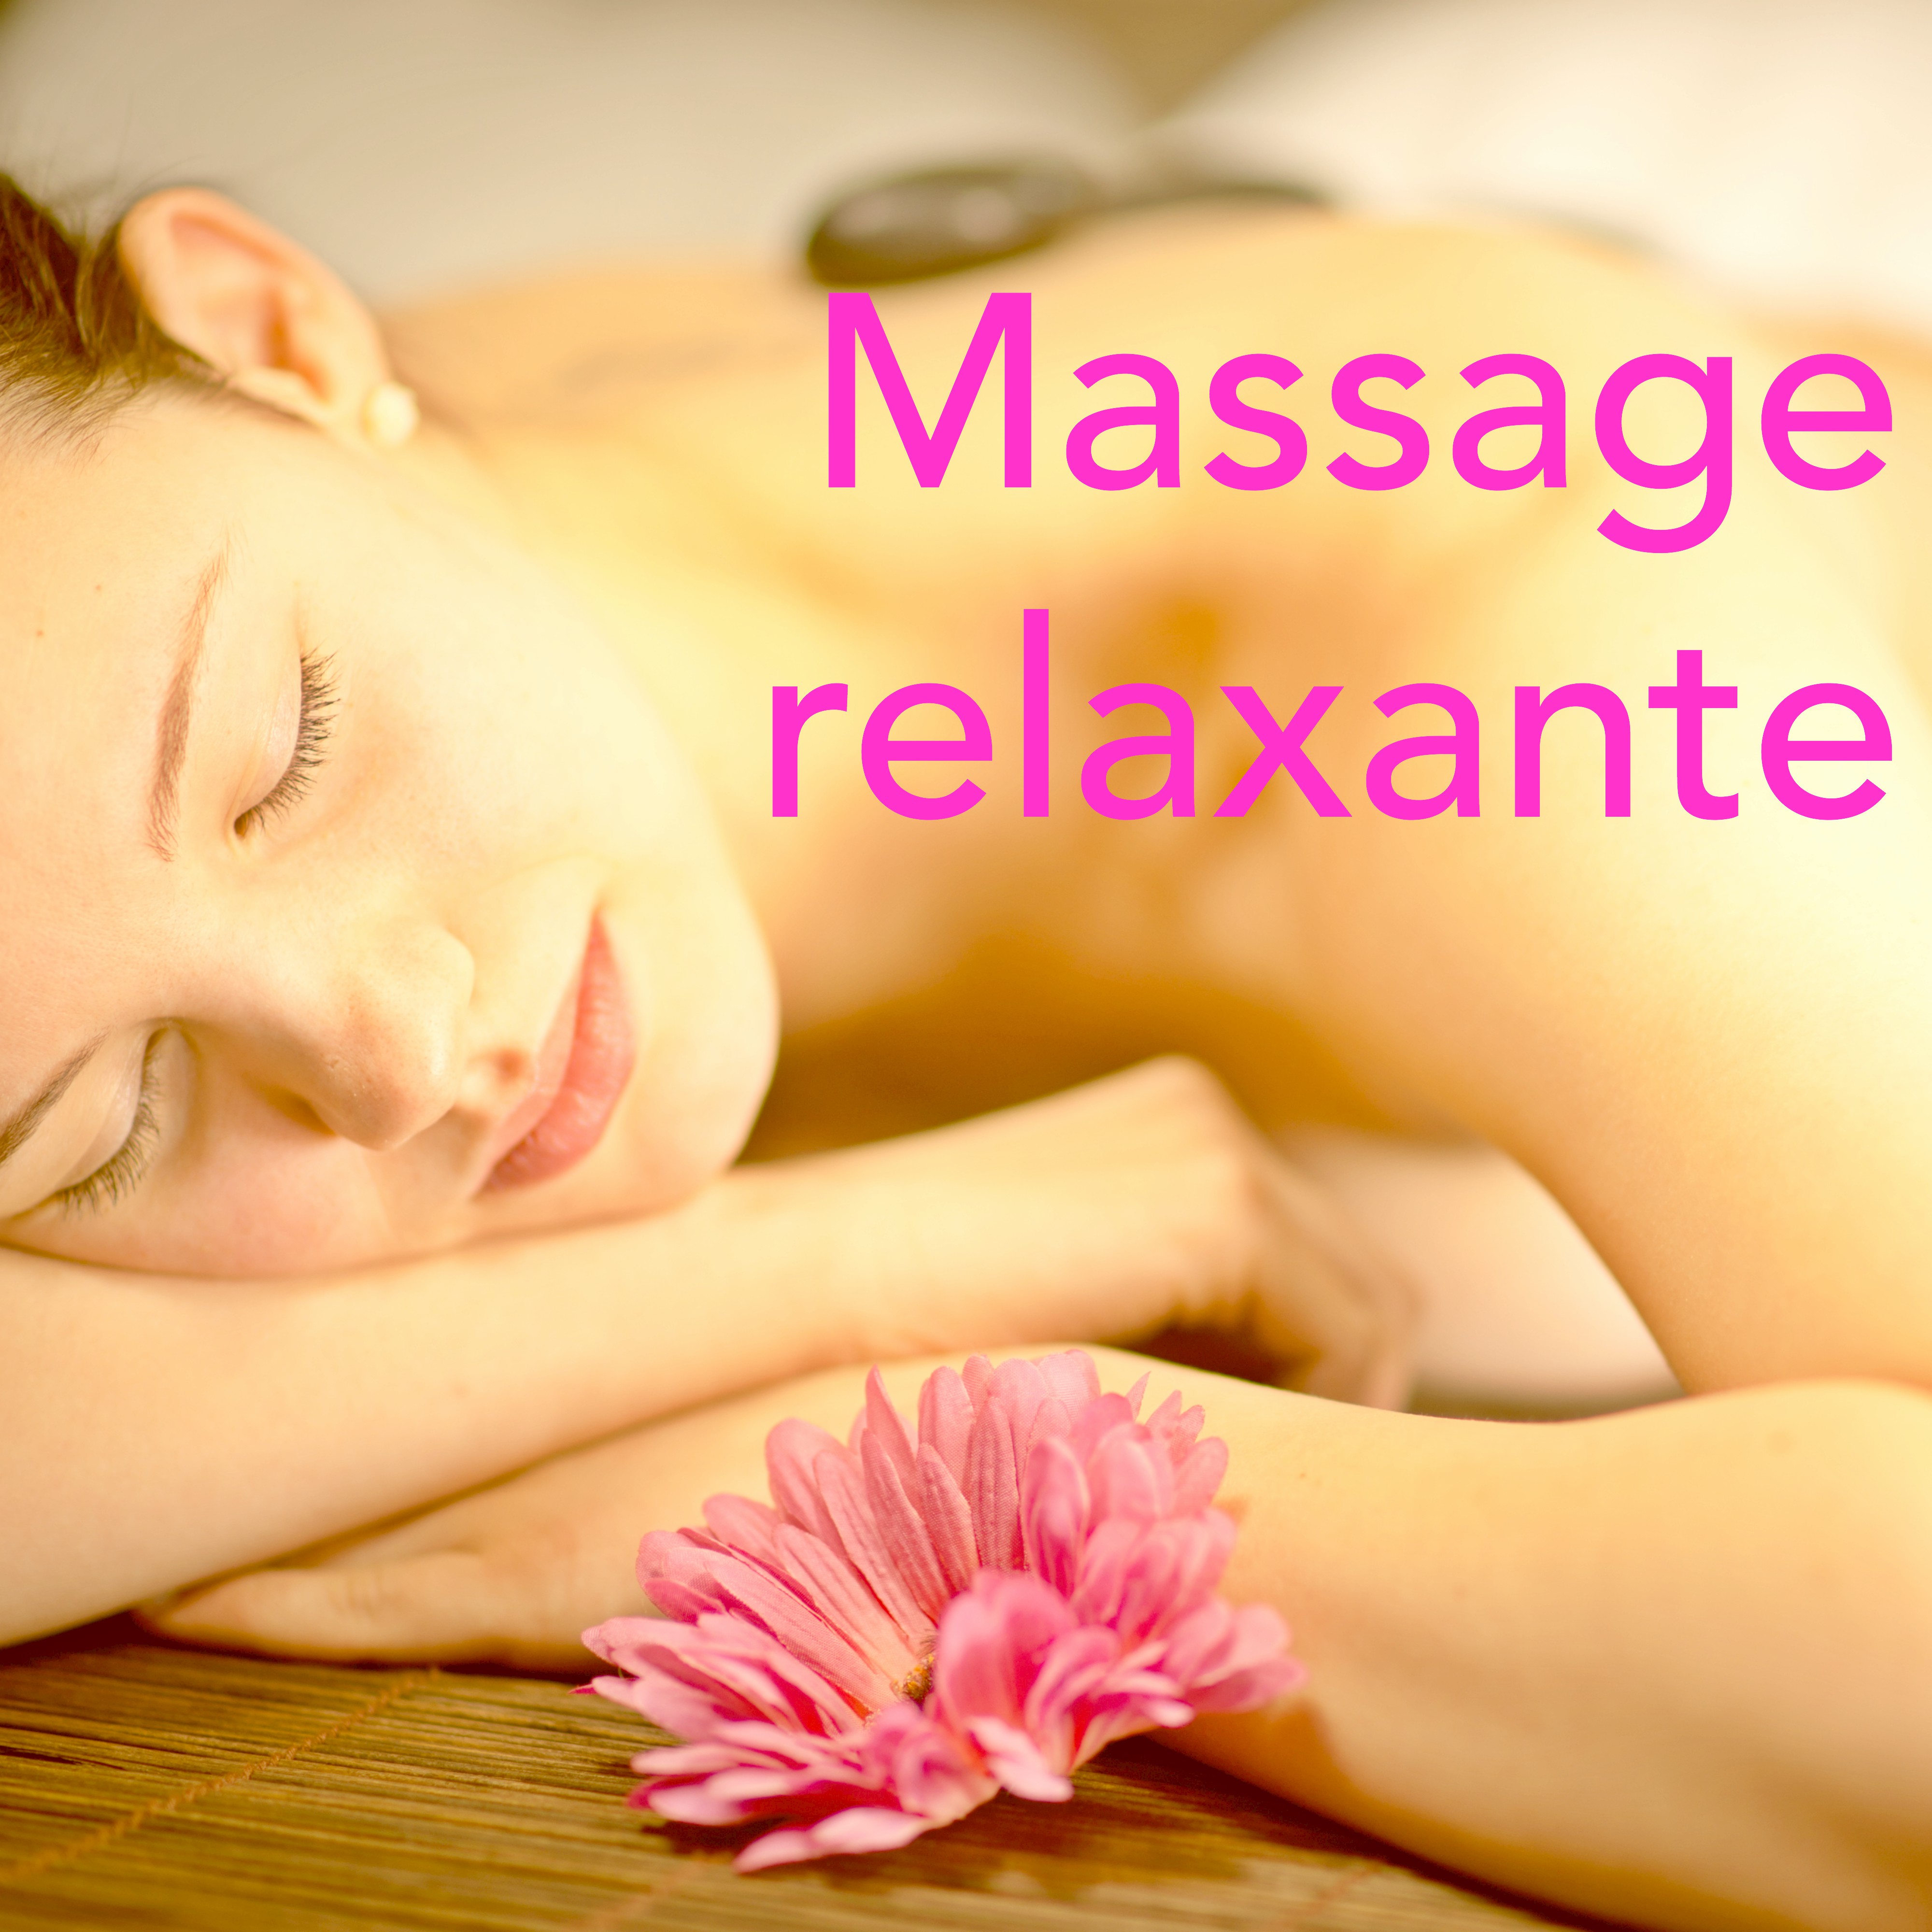 Massage Relaxante – Compilation pour Massage Longue et Profonde, Régénération de Corps et Esprit